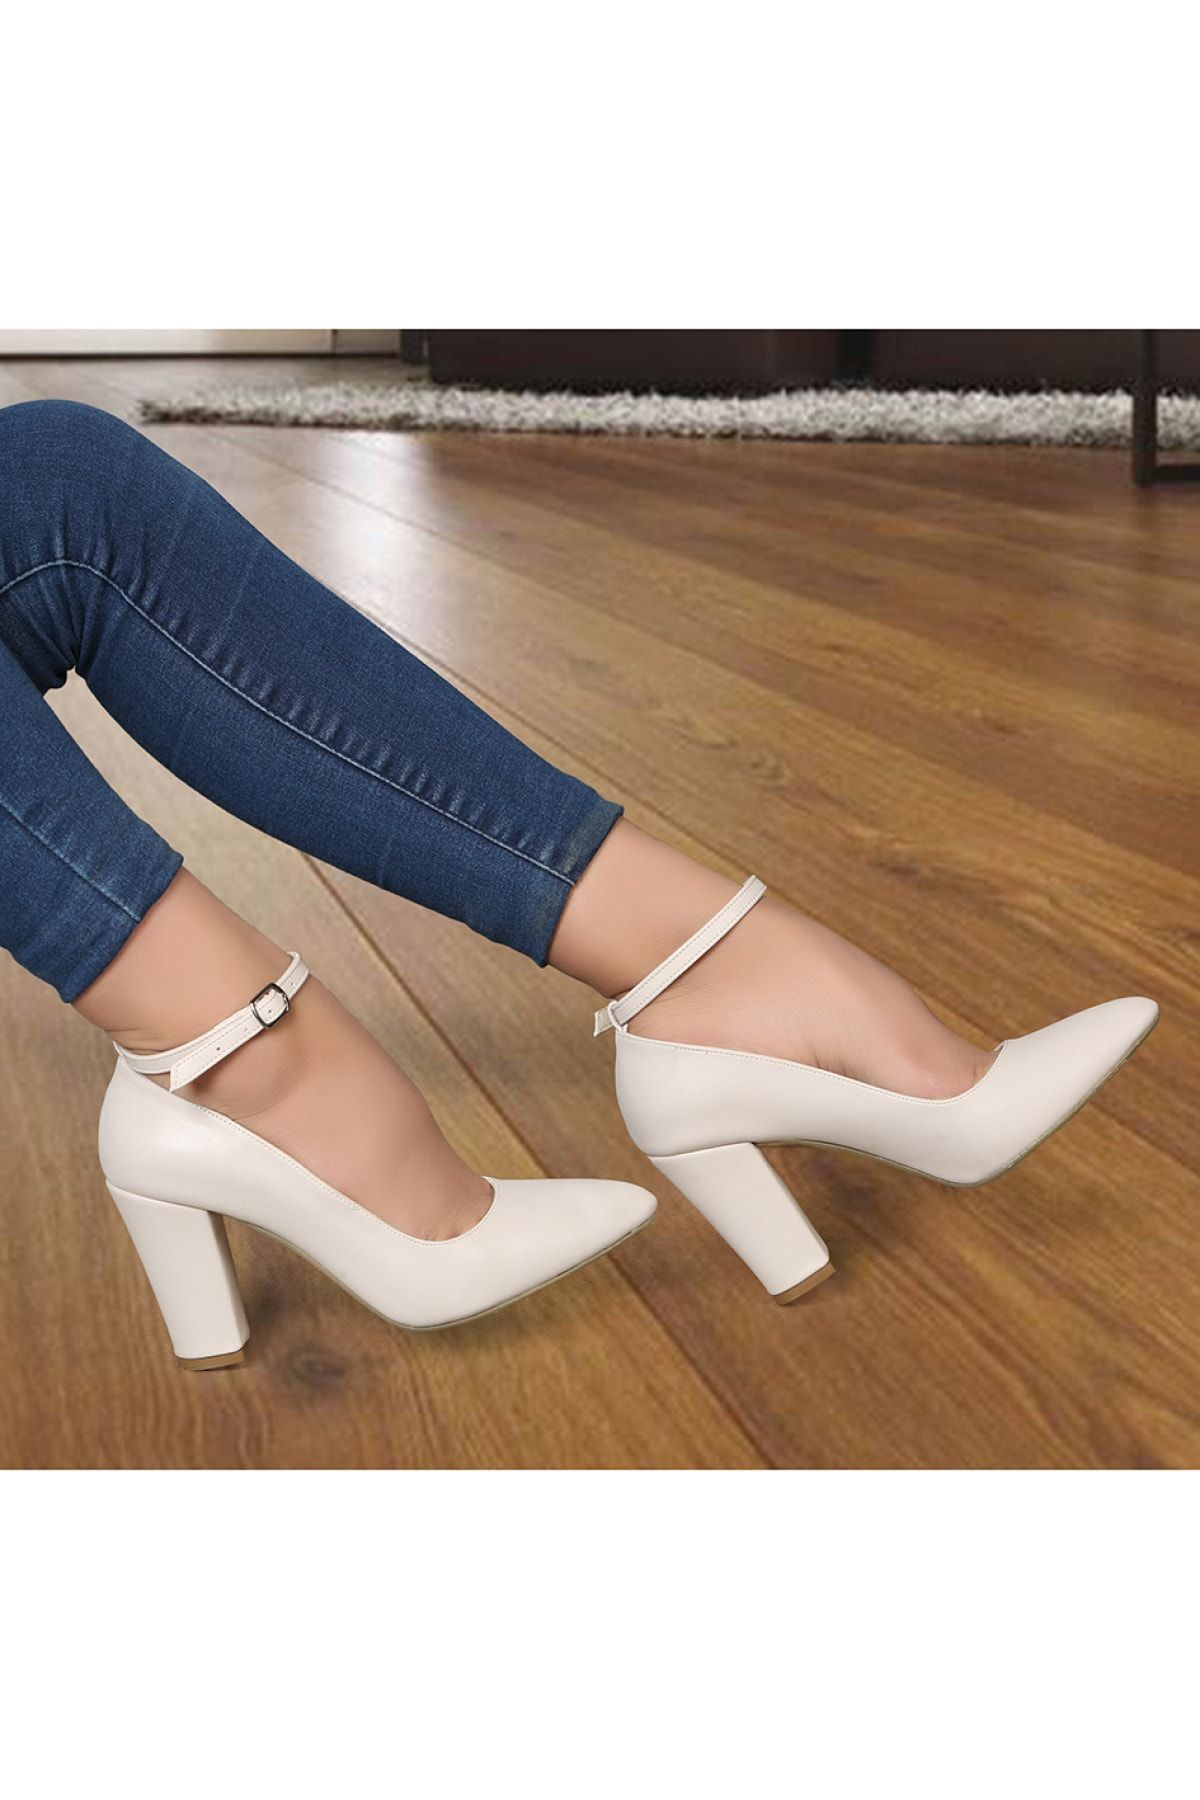 Renas R803 Günlük Klasik Kadın Topuklu Ayakkabı